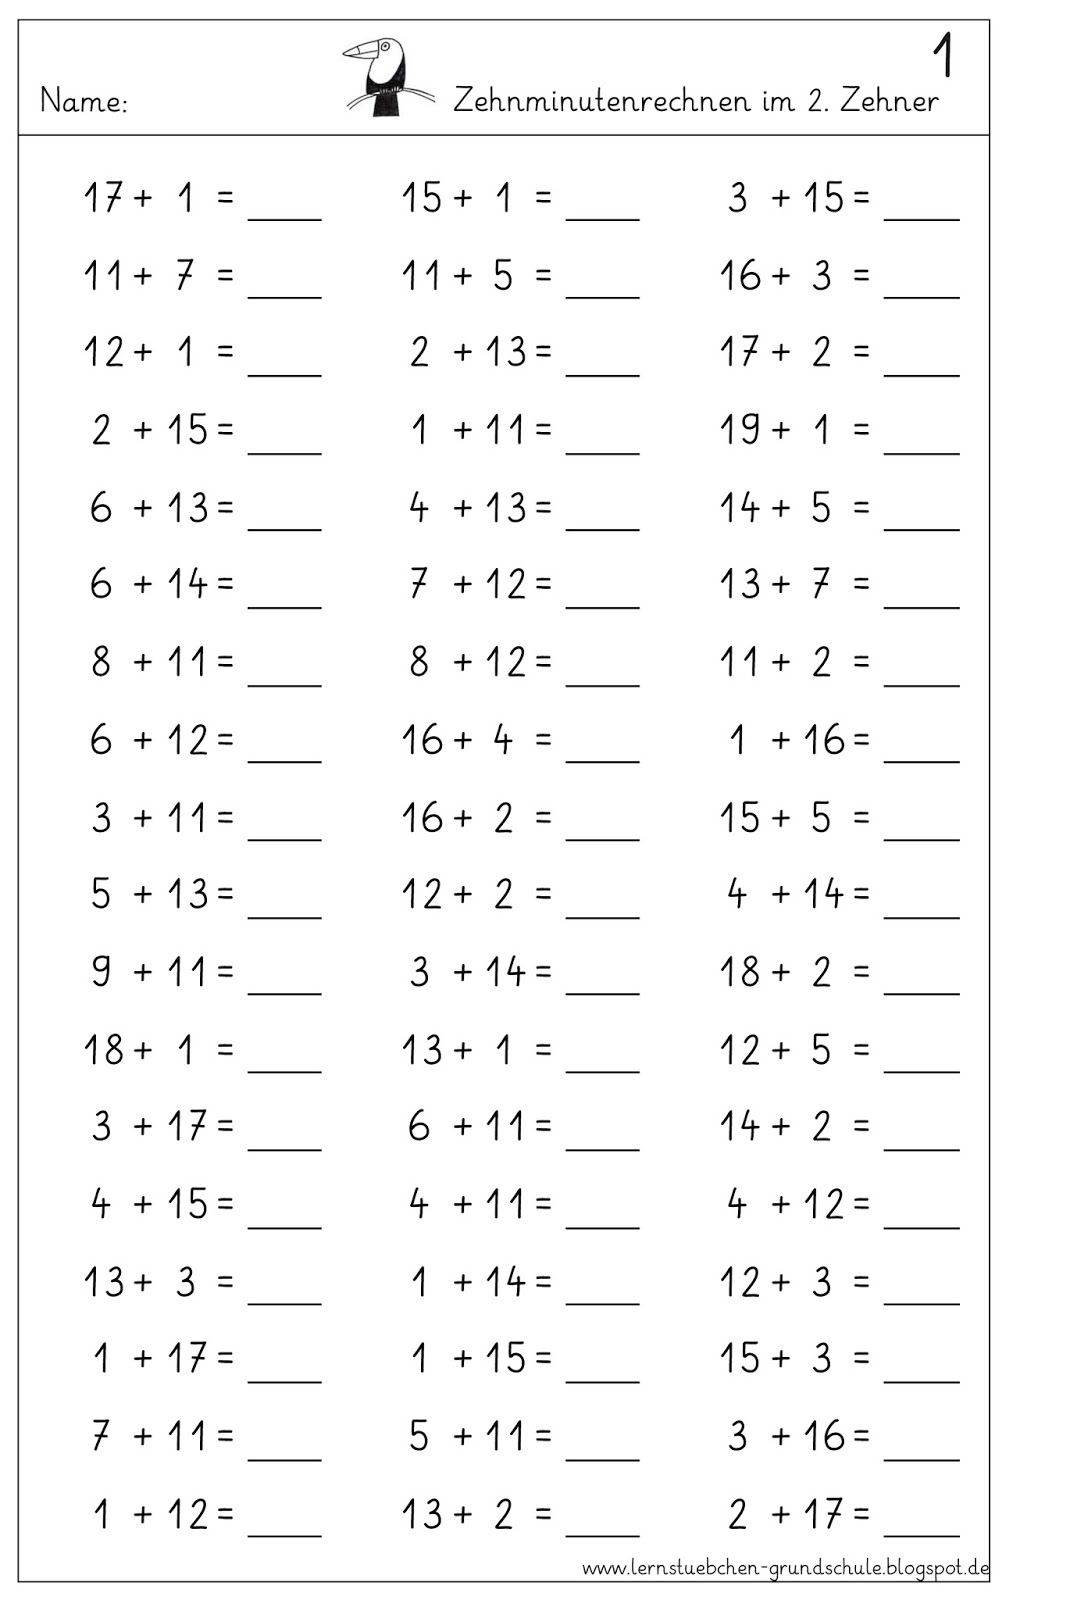 30 Mathe Arbeitsblätter Klasse 1 Zum Ausdrucken Kostenlos bestimmt für Rechenaufgaben 1 Klasse Zum Ausdrucken